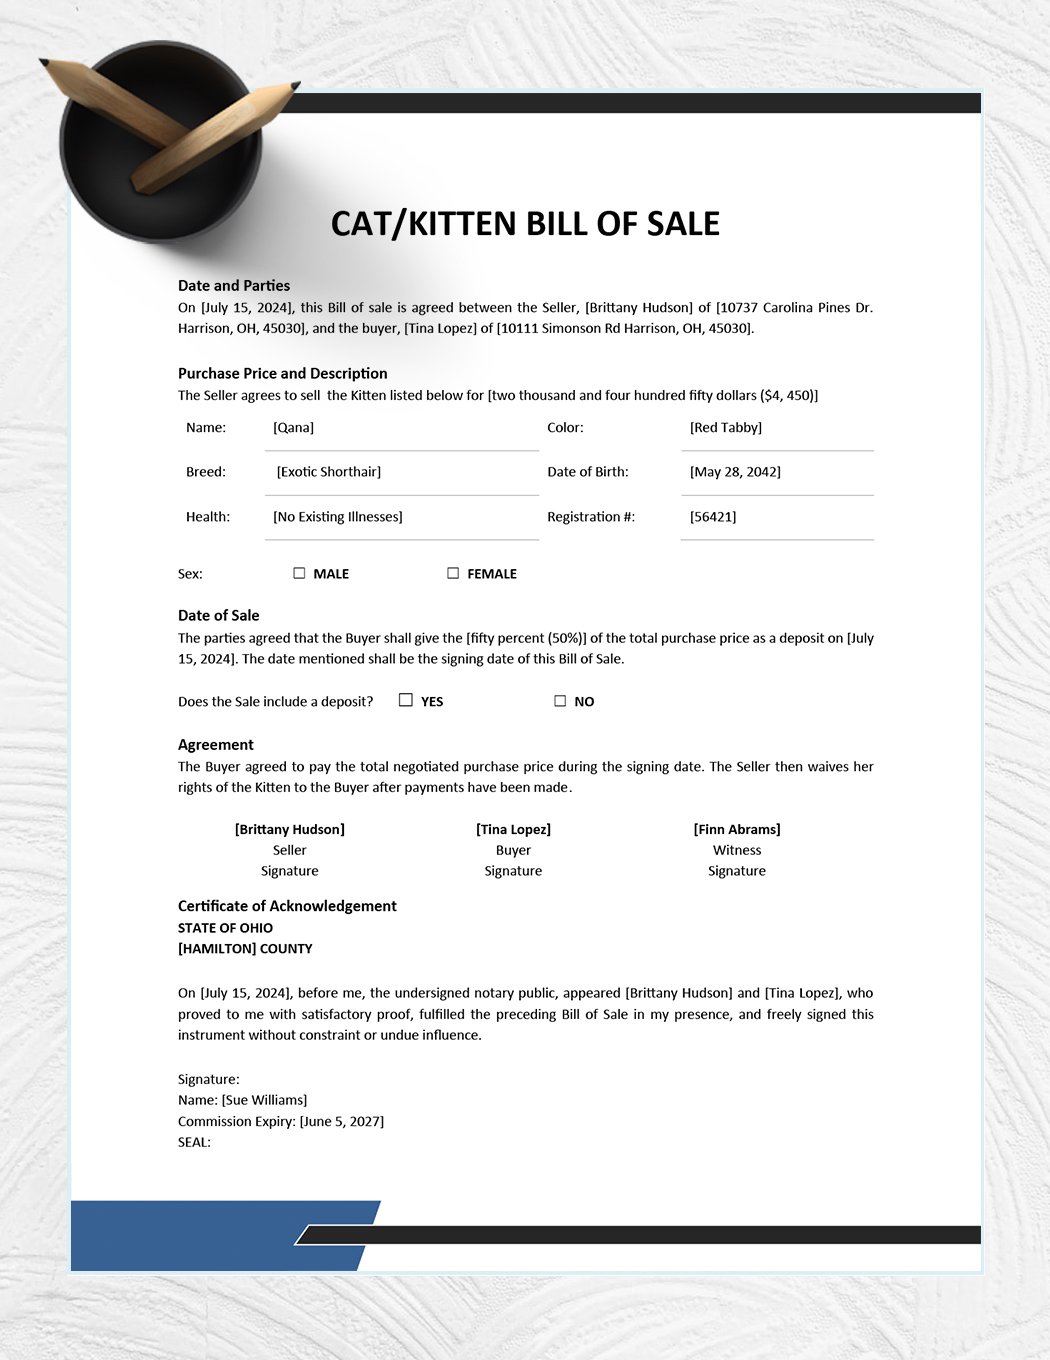 Cat / Kitten Bill of Sale Template